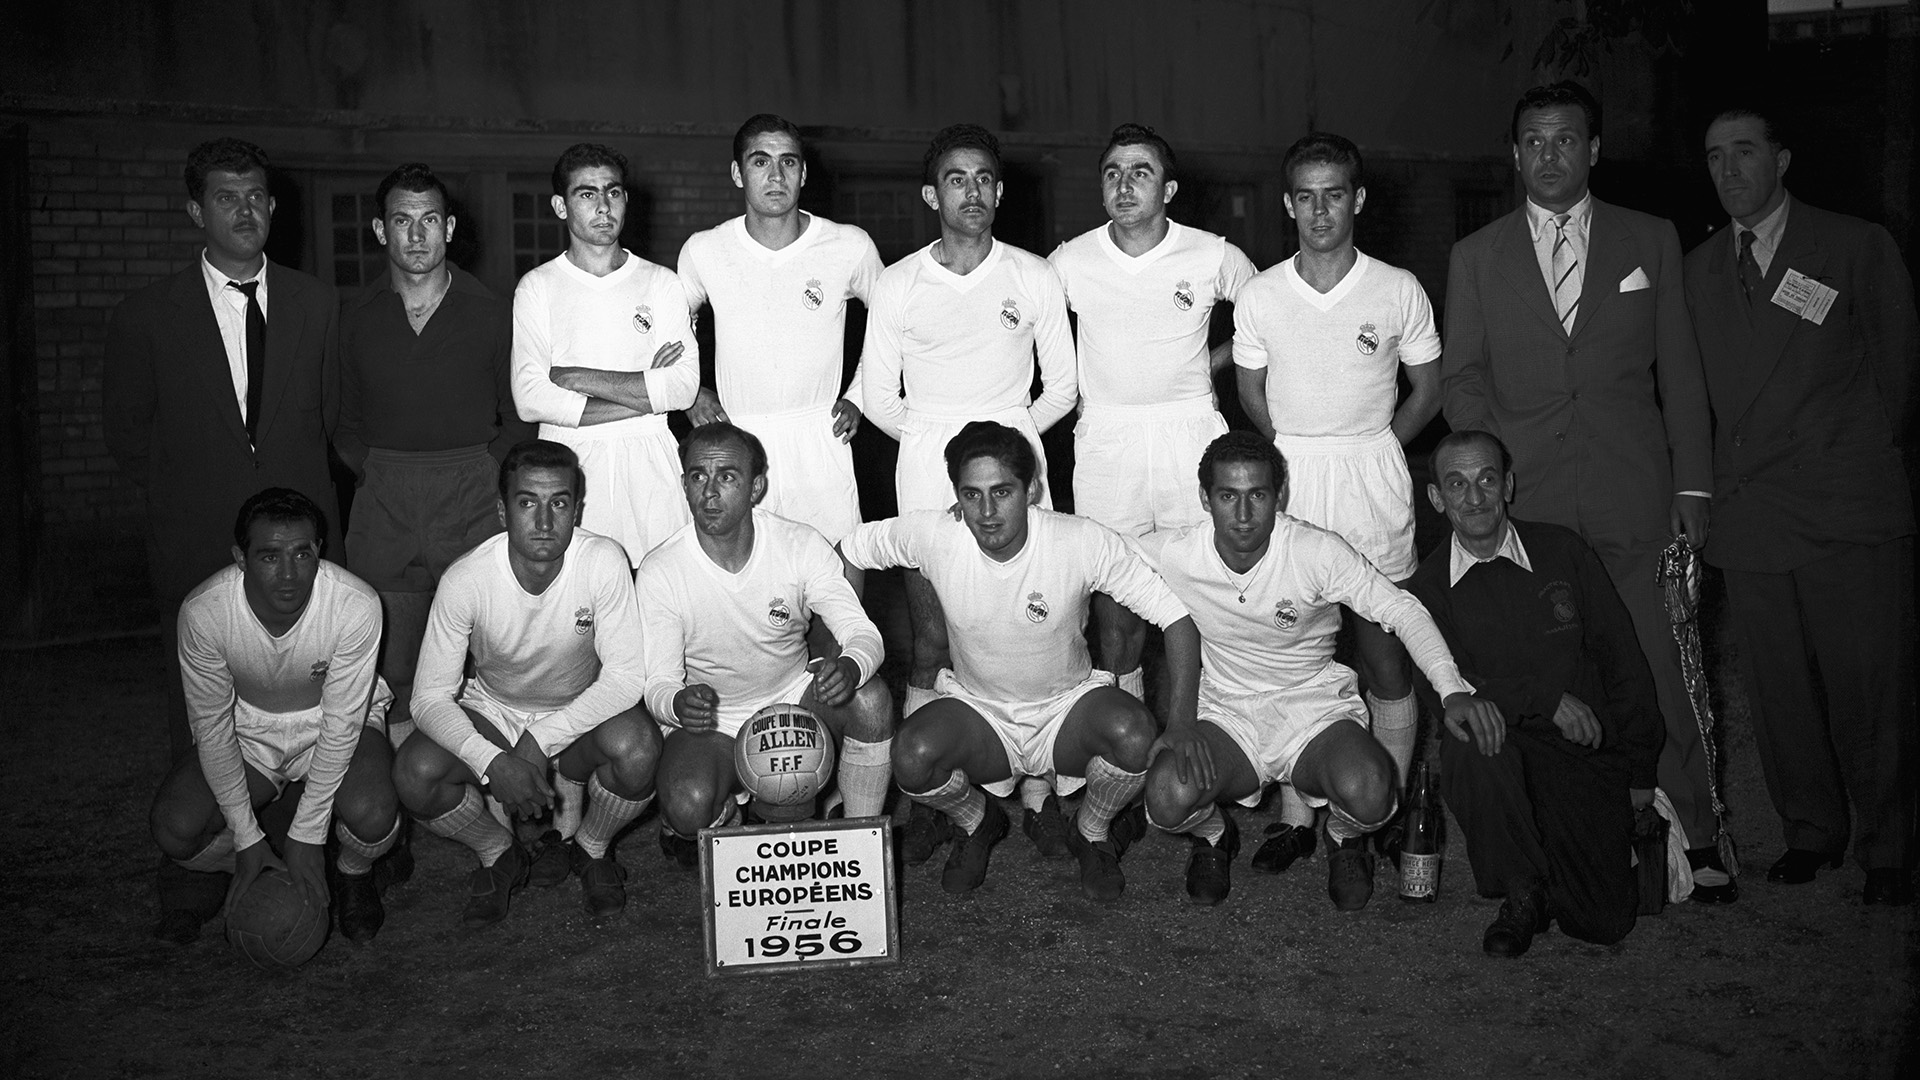 В сезоне 1955/56, когда «Реал Мадрид» впервые участвовал в клубном розыгрыше Кубка европейских чемпионов, «Реал» одержал окончательную победу над французским «Реймсом» со счетом 4:3. Командный портрет «Реала»